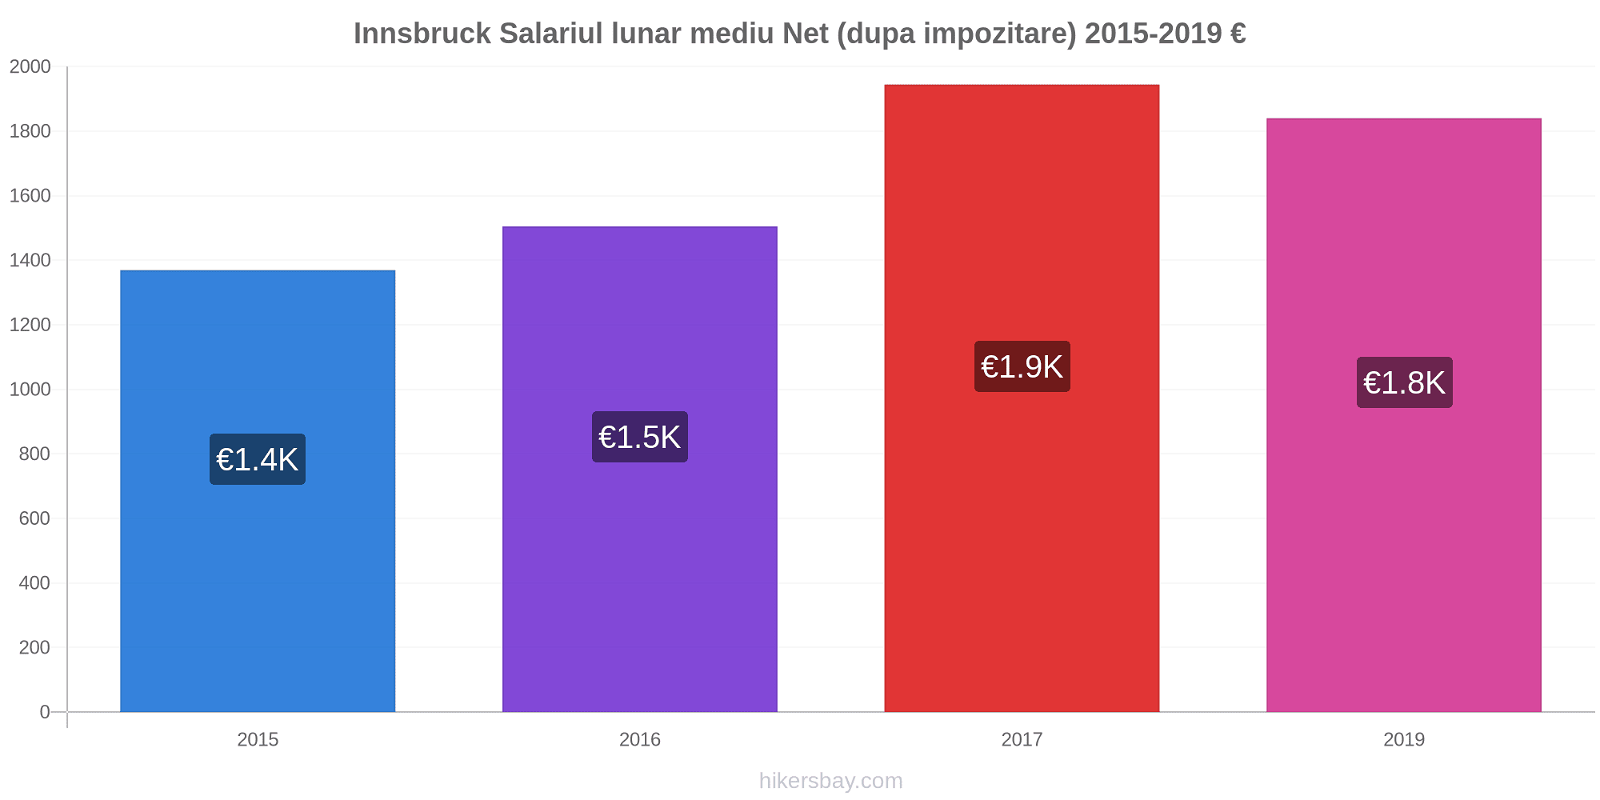 Innsbruck modificări de preț Salariul lunar mediu Net (dupa impozitare) hikersbay.com